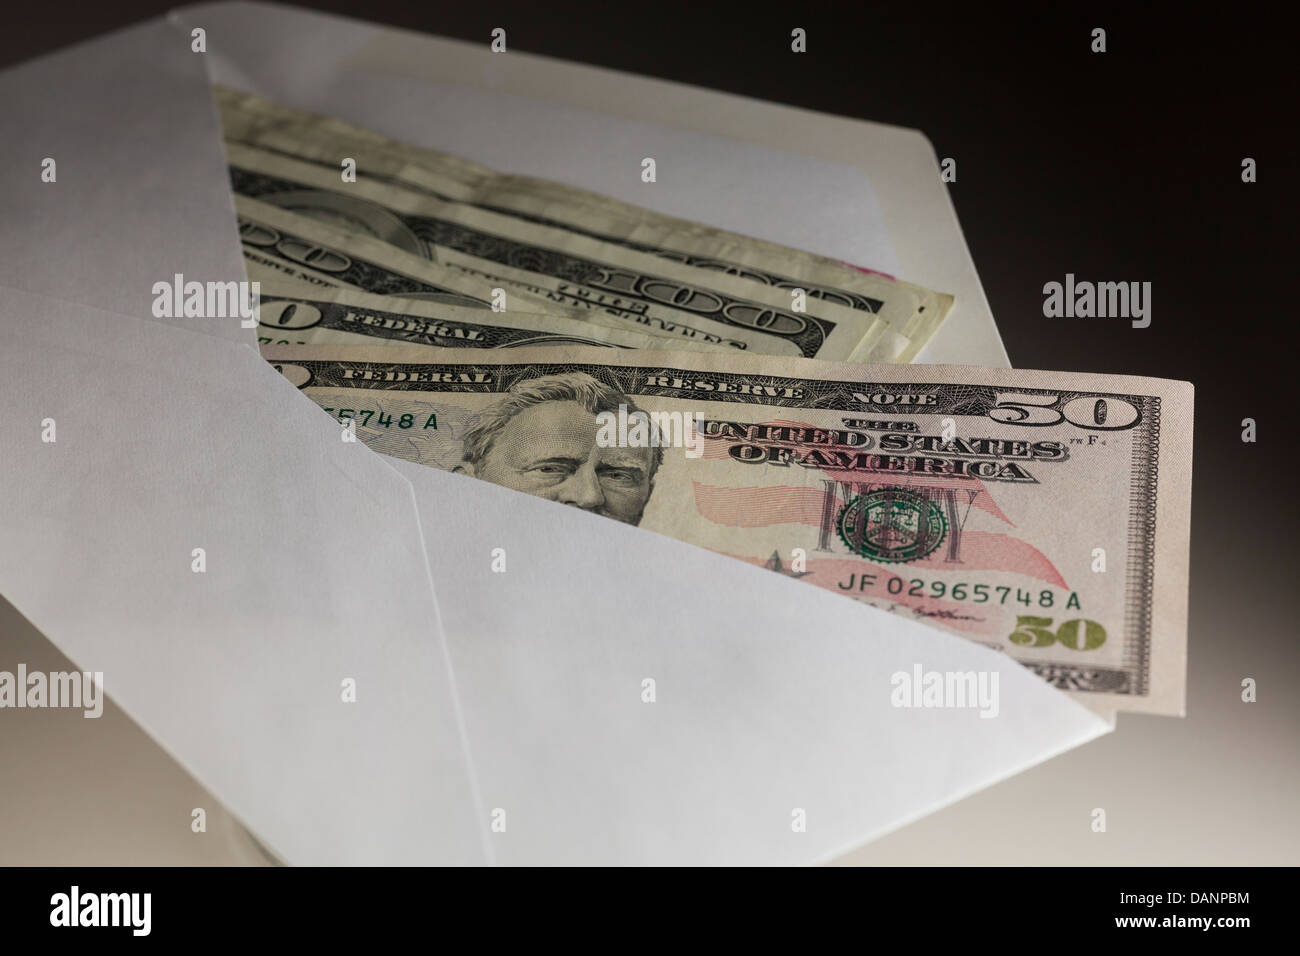 US money in envelope Stock Photo